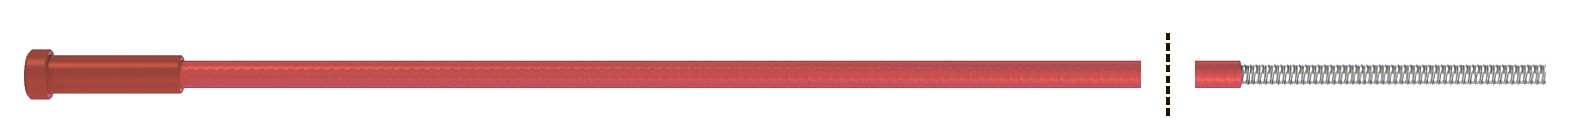 Fubag Канал направляющий 3.40 м диам. 1.0-1.2_сталь_красный (1 шт.) FB.SLR-30 MAG фото, изображение